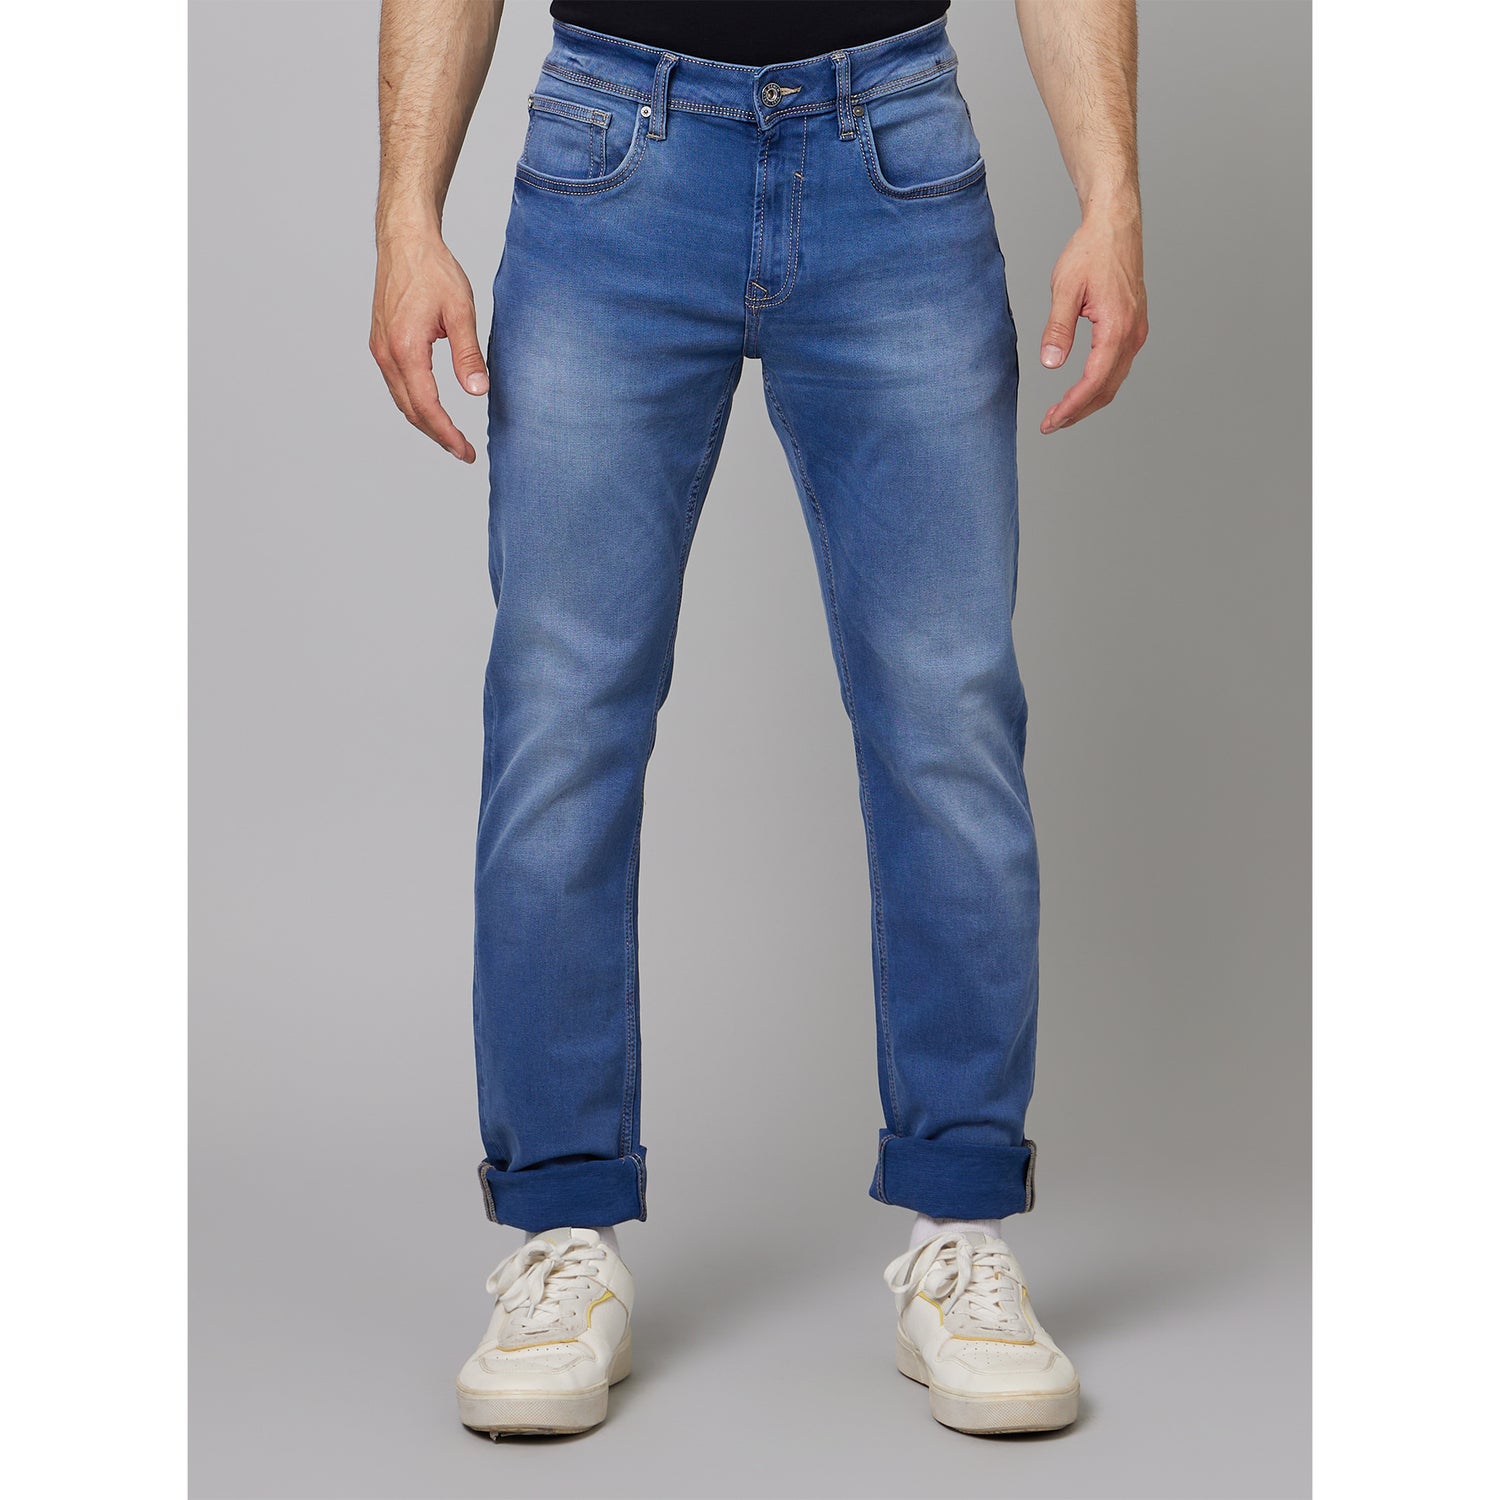 Blue Straight Fit Heavy Fade Jeans (BOSEASTL)